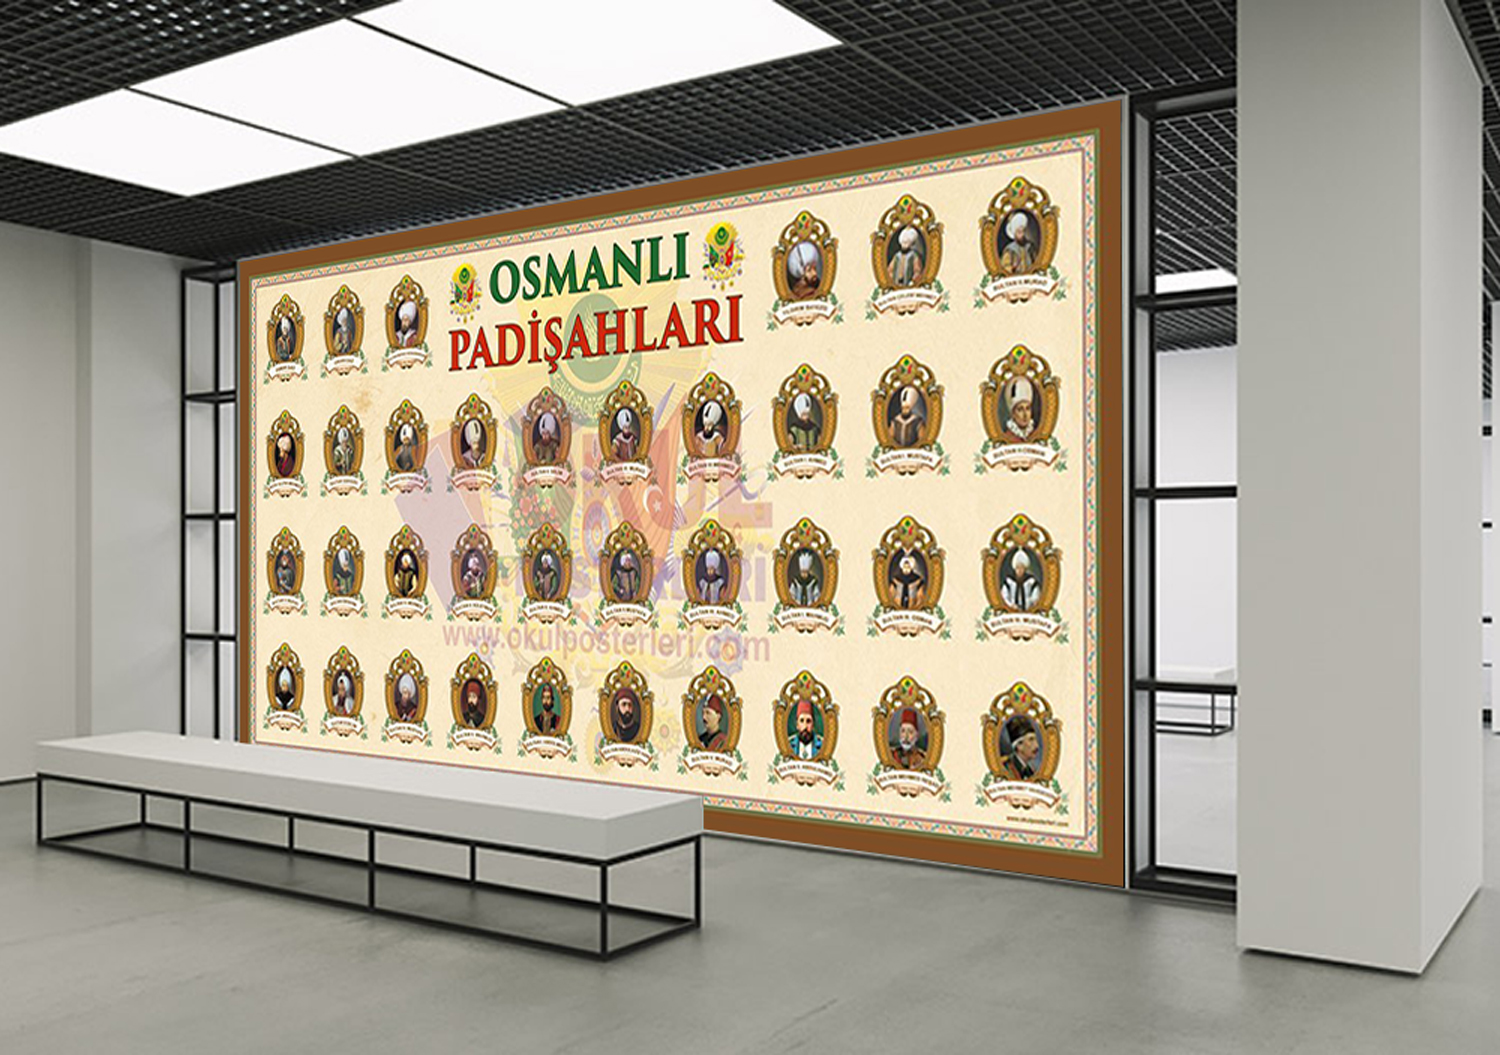 Osmanlı Padişahları Okul Posteri